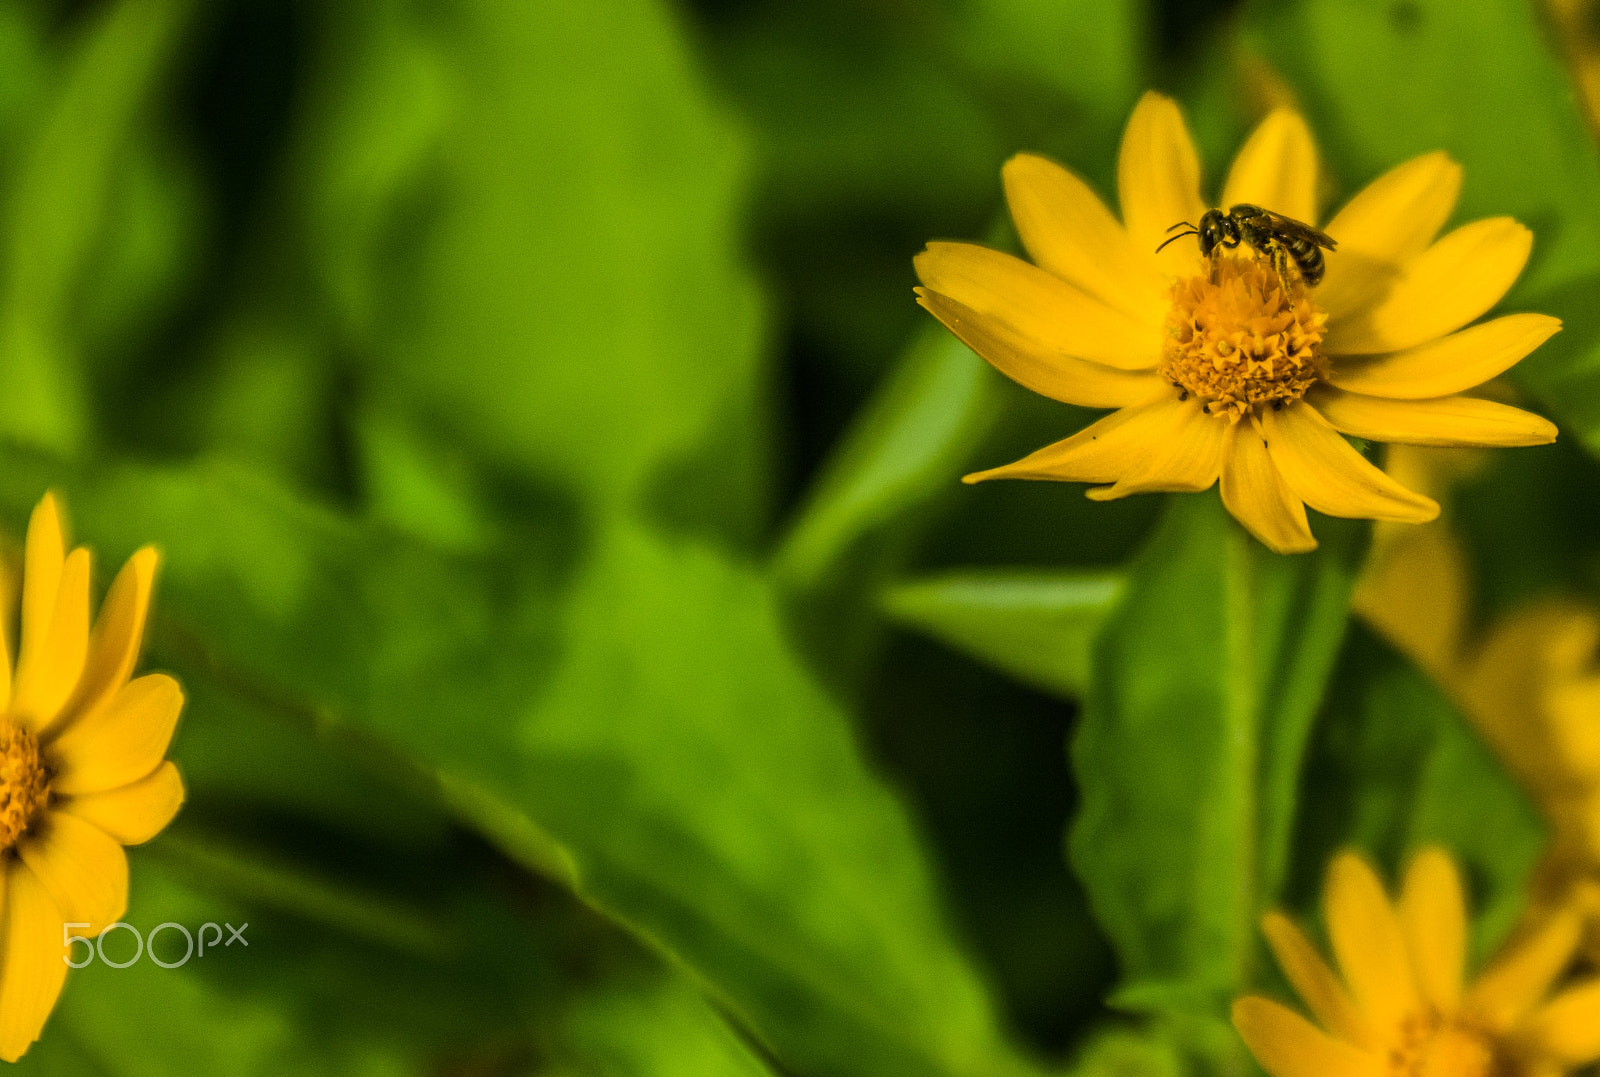 Nikon D7100 + AF Zoom-Nikkor 35-70mm f/2.8D sample photo. Working bee photography